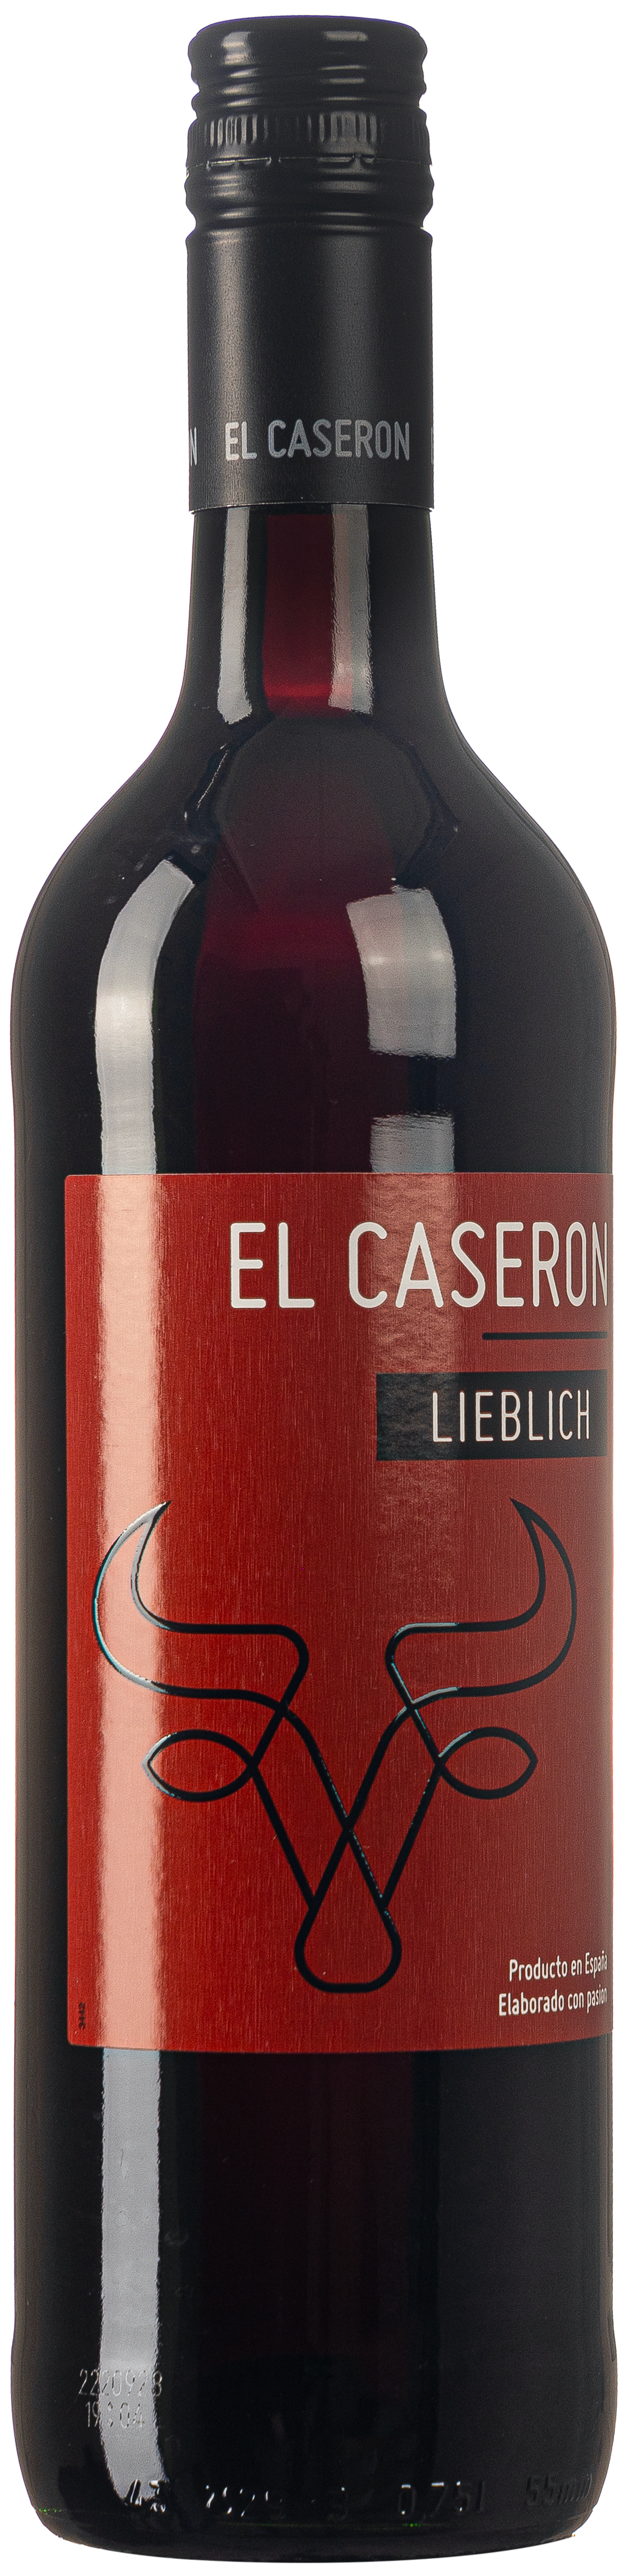 El Caseron Tinto lieblich 11% vol. 0,75L